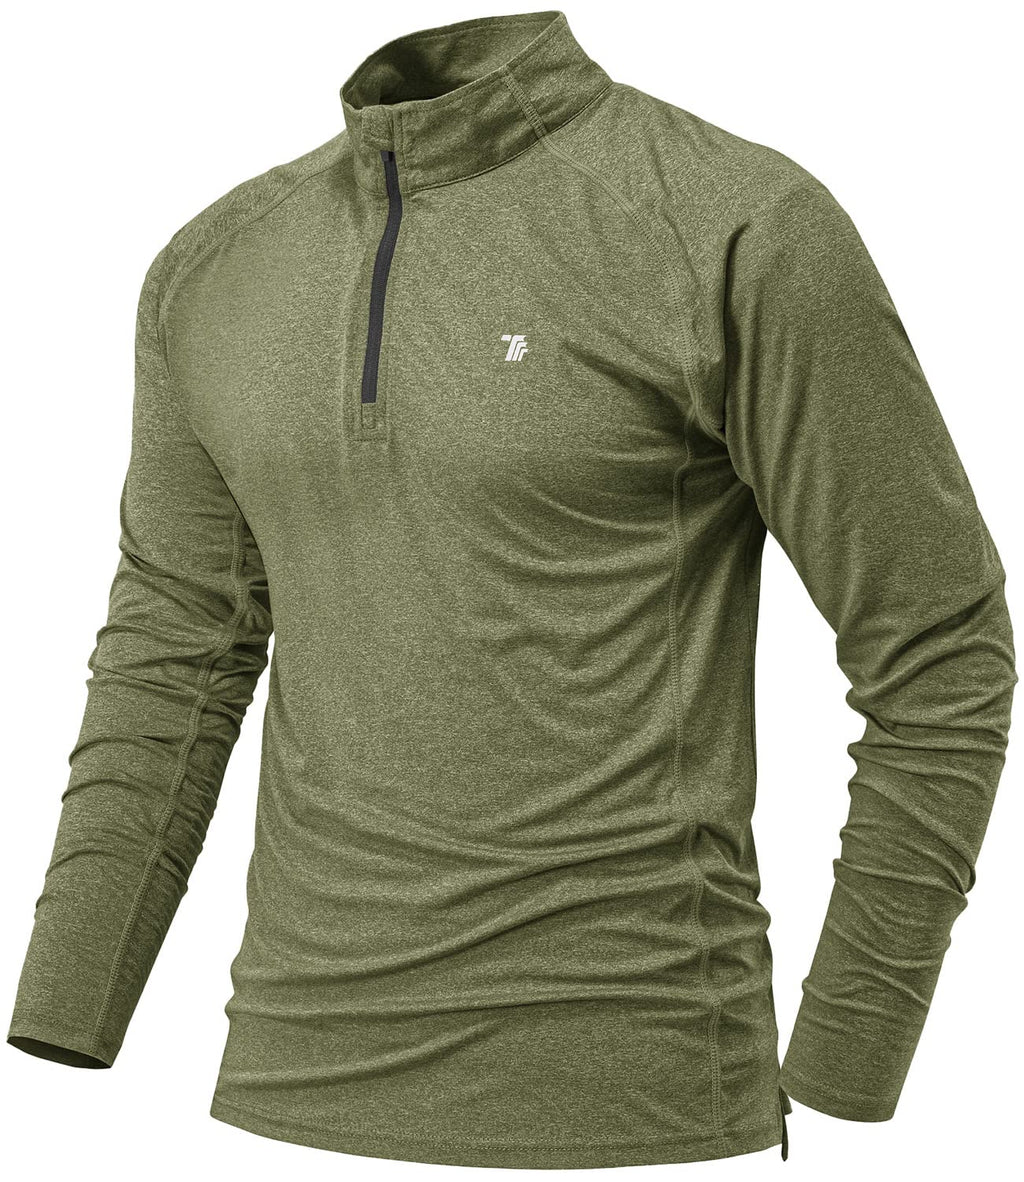 BGOWATU Men's Golf Polo Shirts Long Sleeve Quarter Zip Pullover Hiking T-Shirt UPF 50 Lightweight Running Tennis Tops Army Green Small - BeesActive Australia